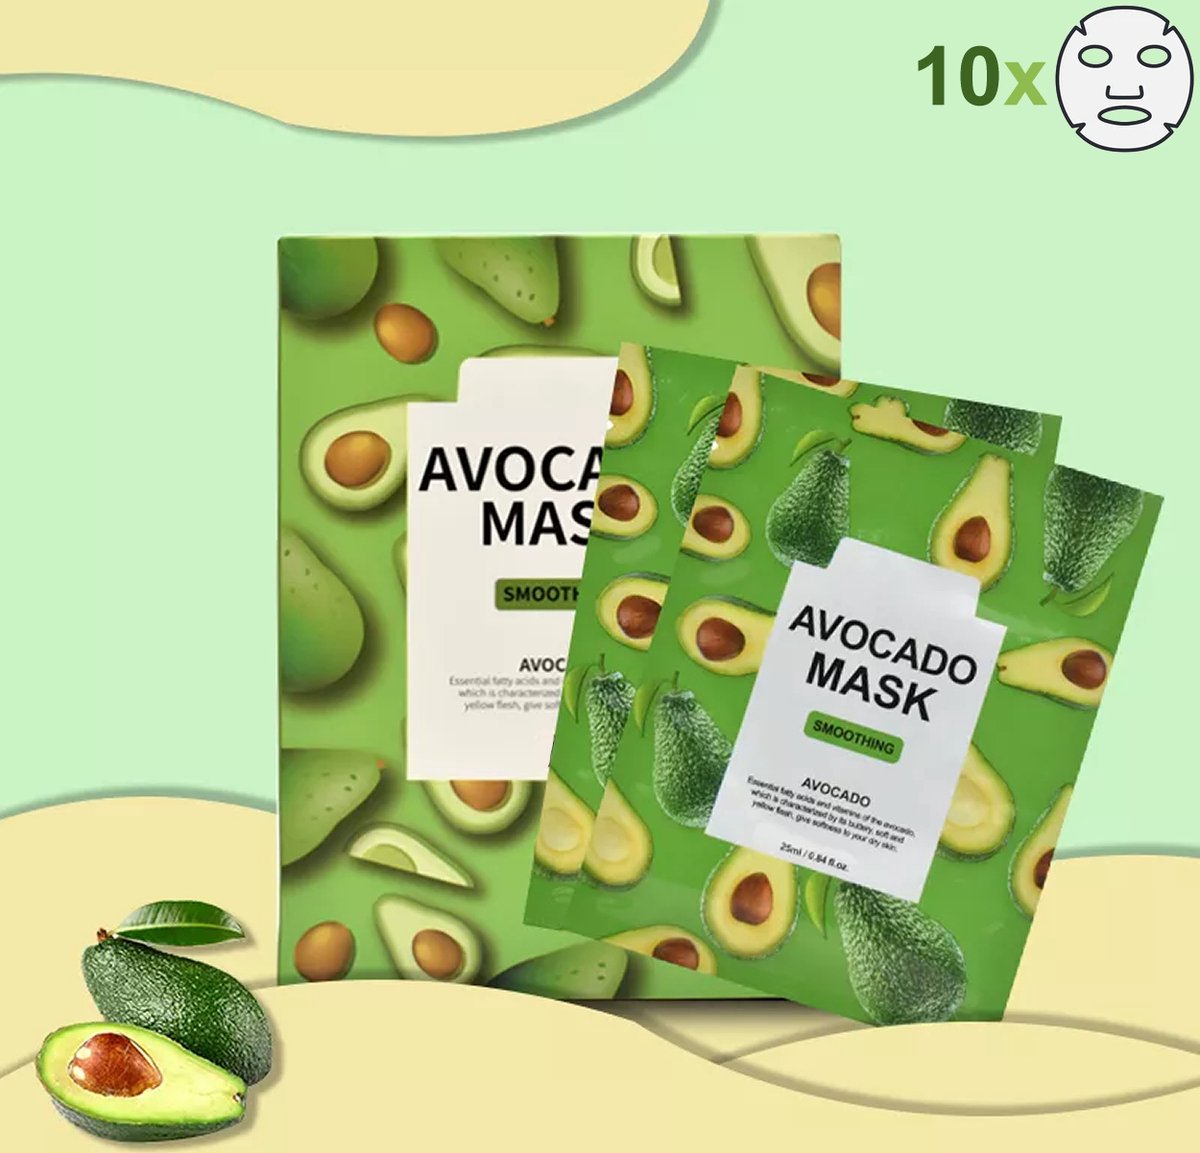 Summer Girl - Sheet Mask - Avocado - Gezichtsmasker - 10 stuks